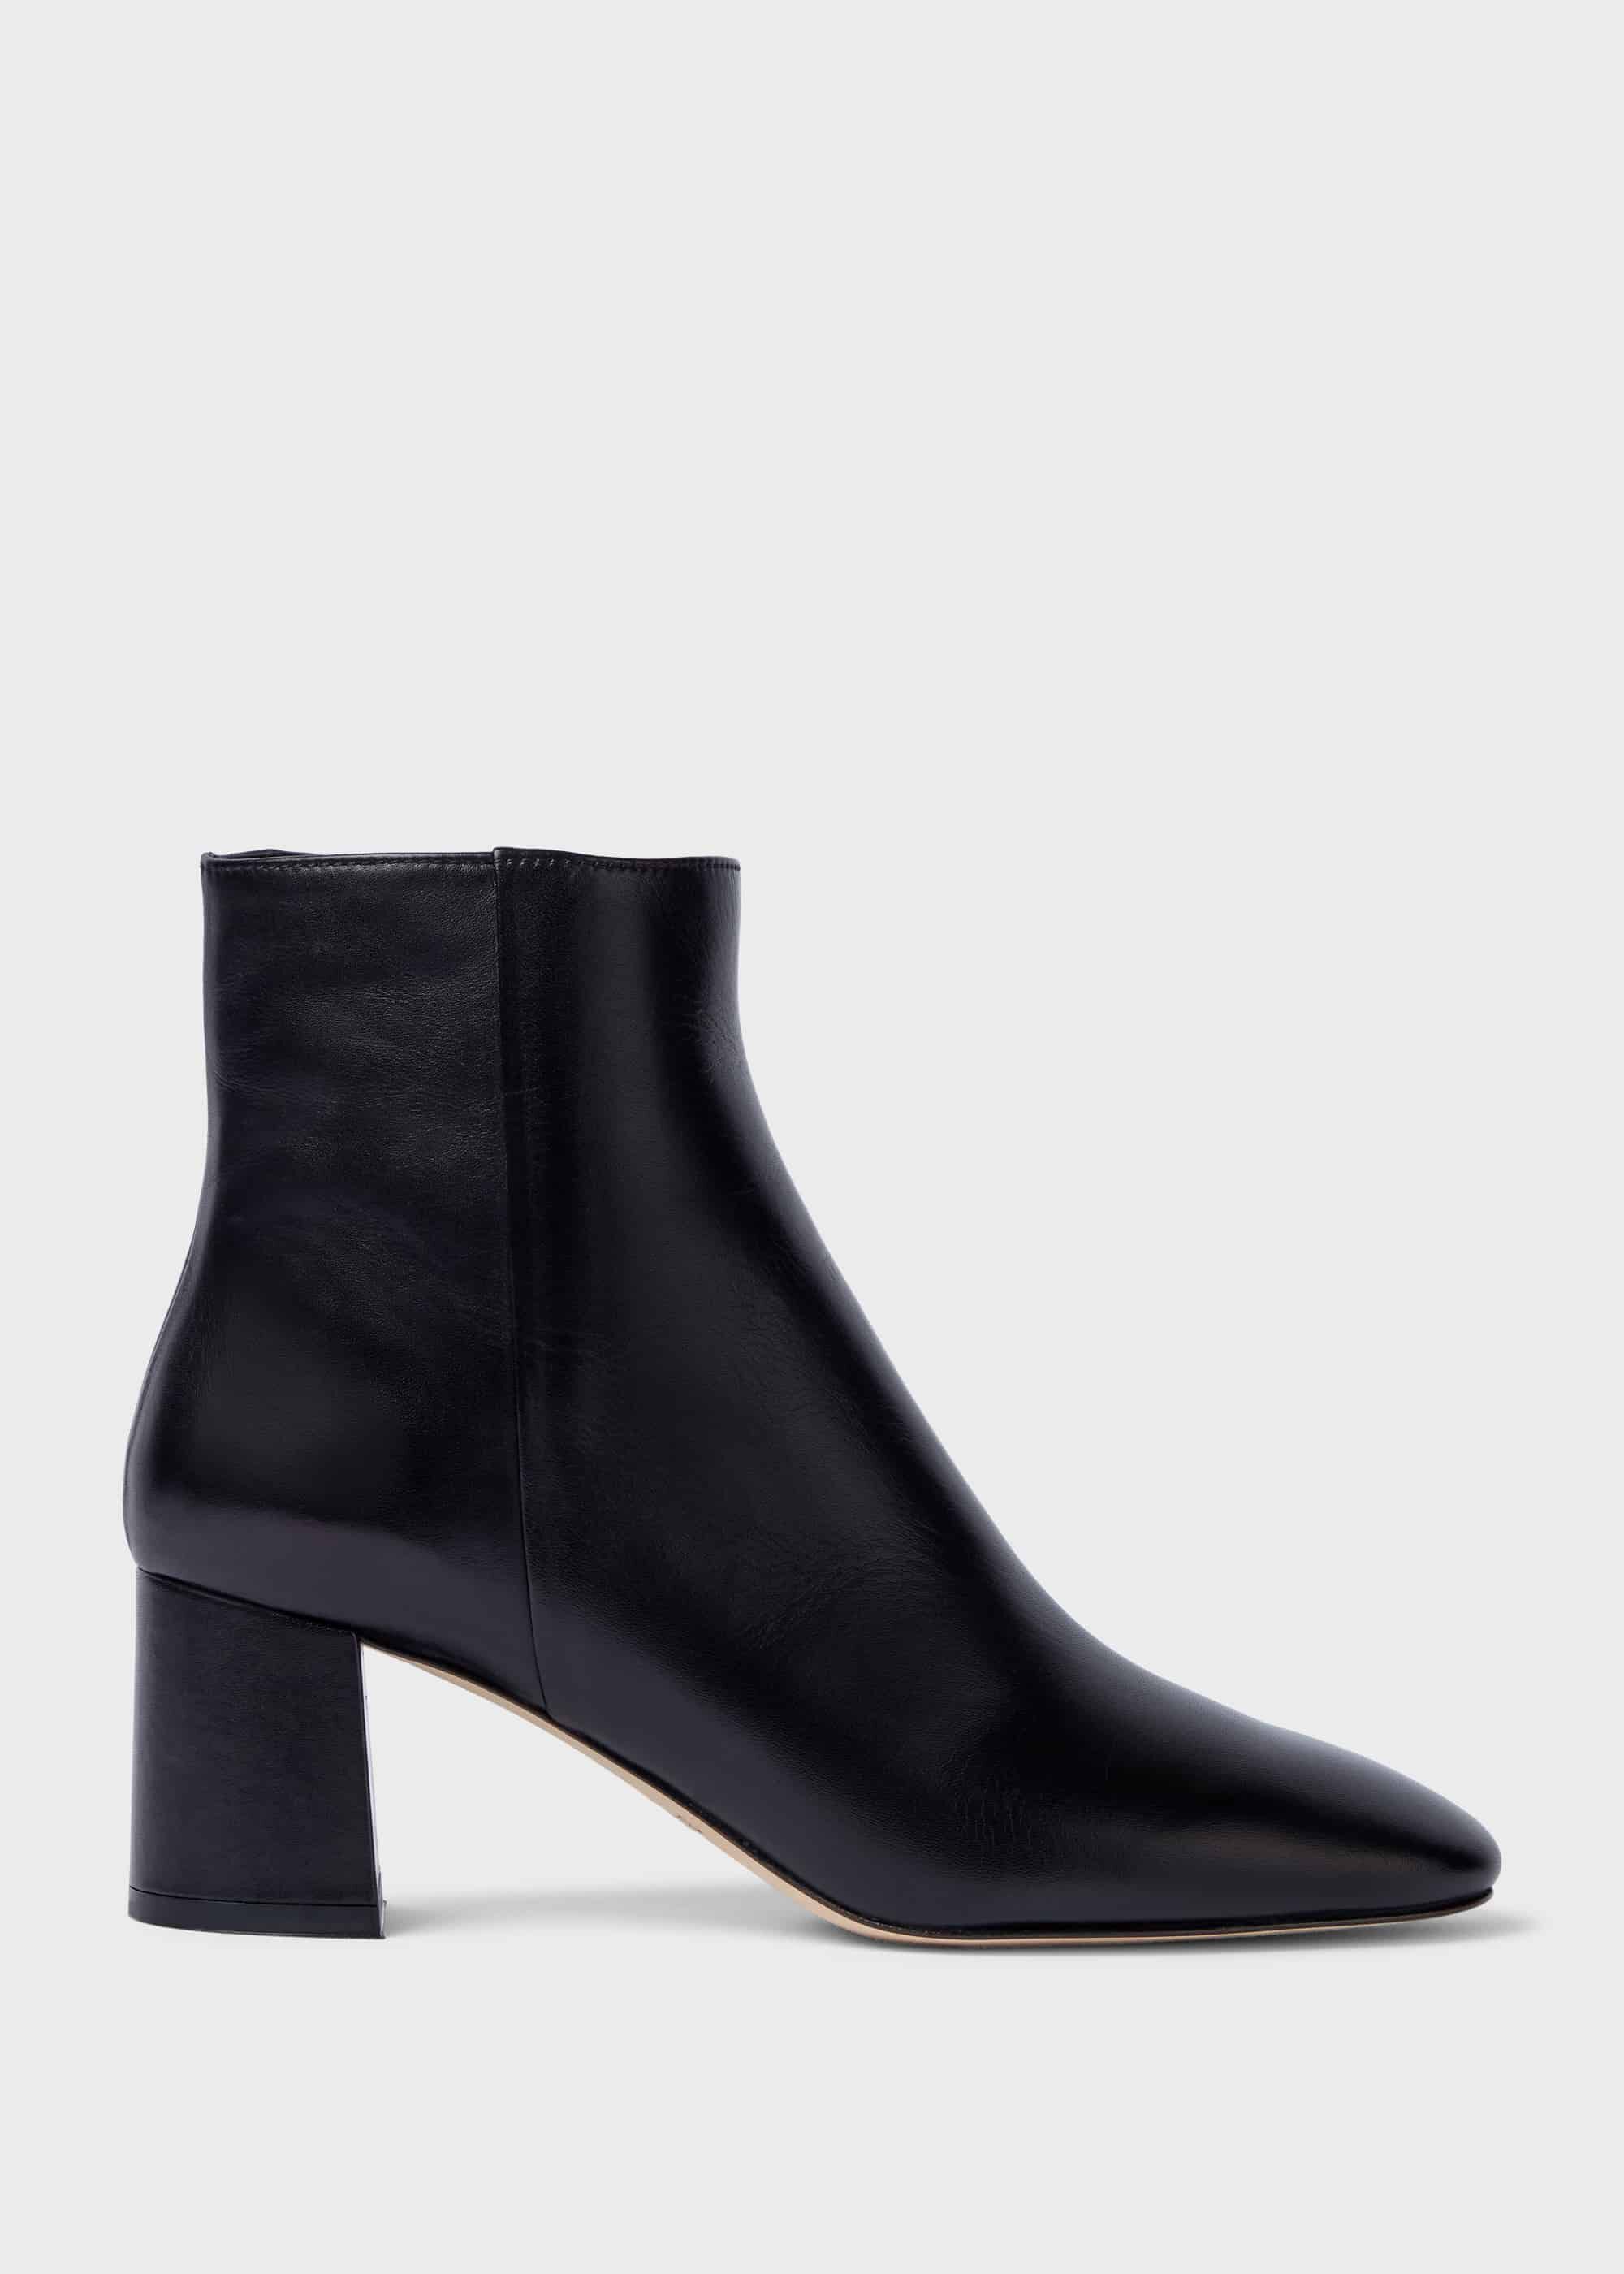 block heel shoe boots uk